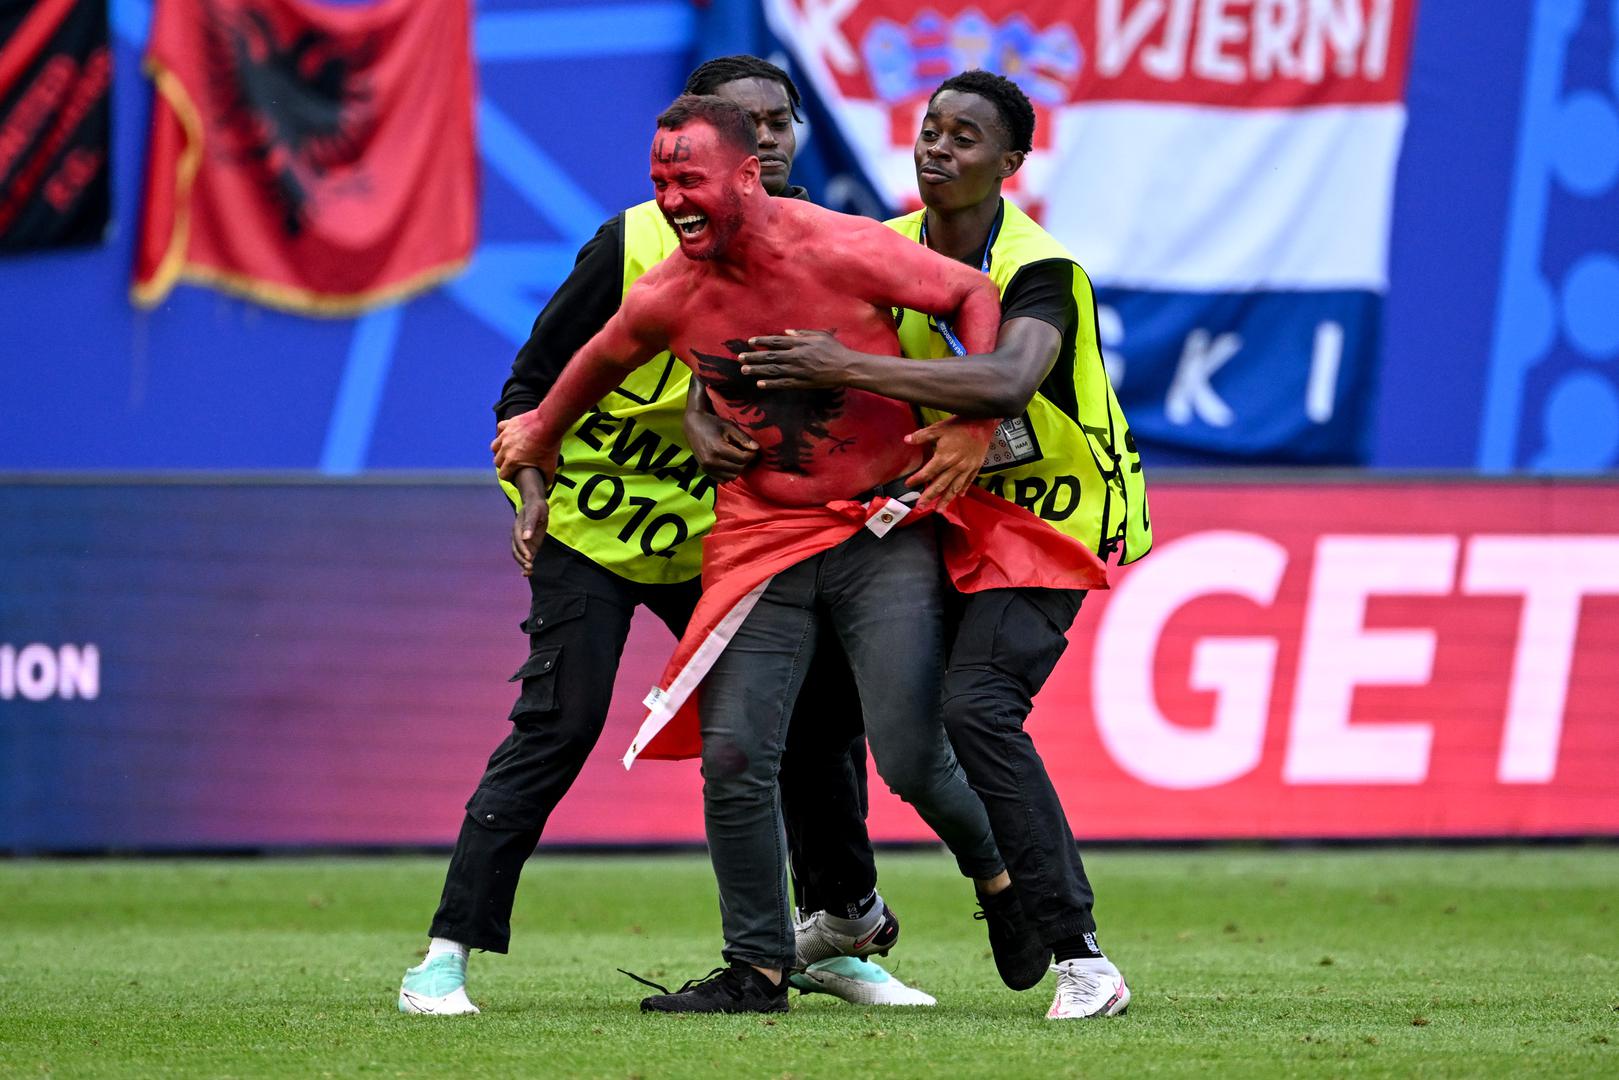  Hrvatski nogometaši su u dramatičnoj utakmici odigranoj u Hamburgu osvojili samo bod protiv Albanije, a dvoboj je završio 2-2.